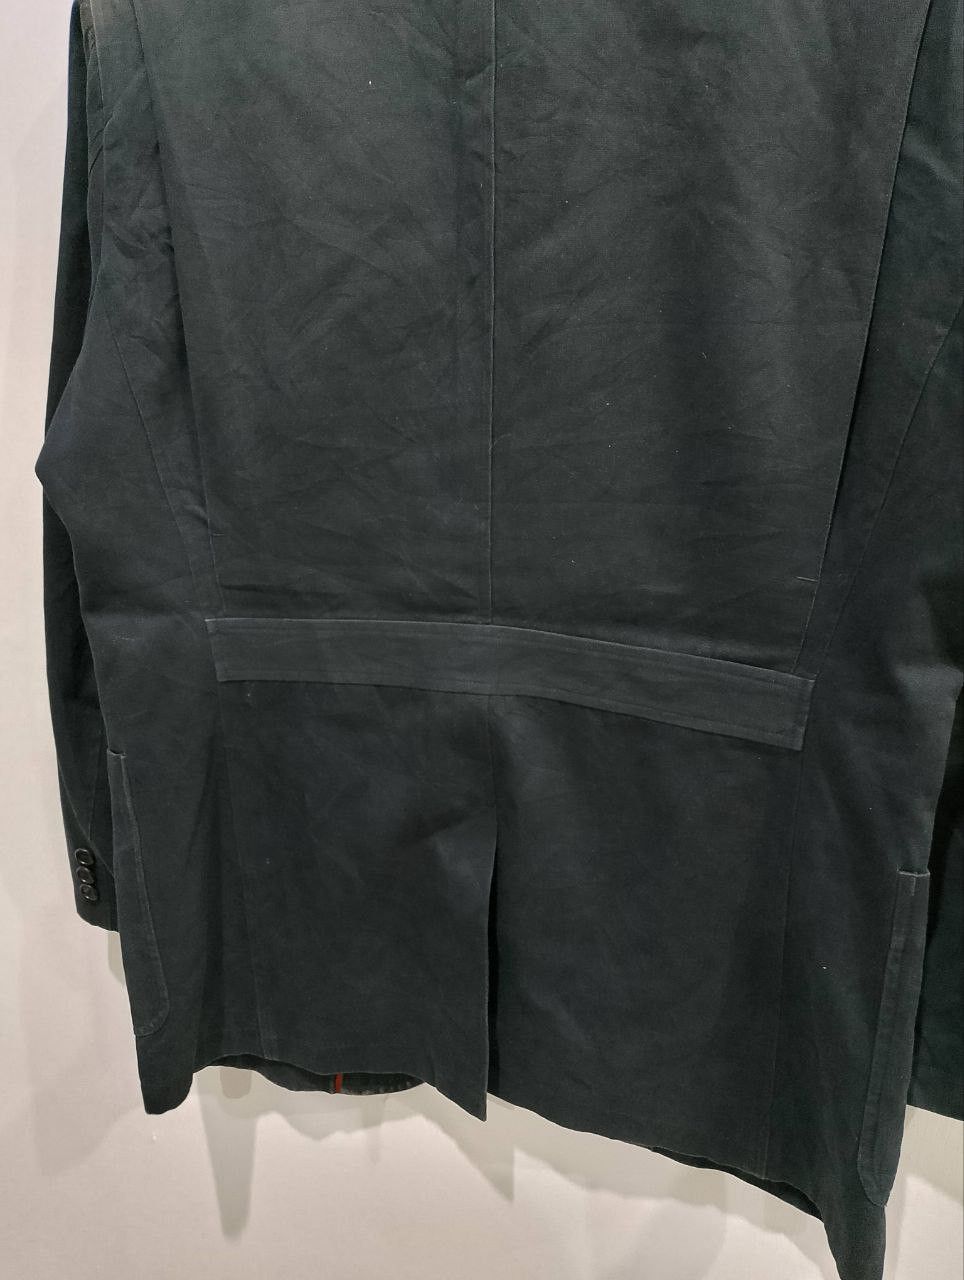 GOLDEN BEAR 3 Button Green Suede Coats Blazer Jacket - 6